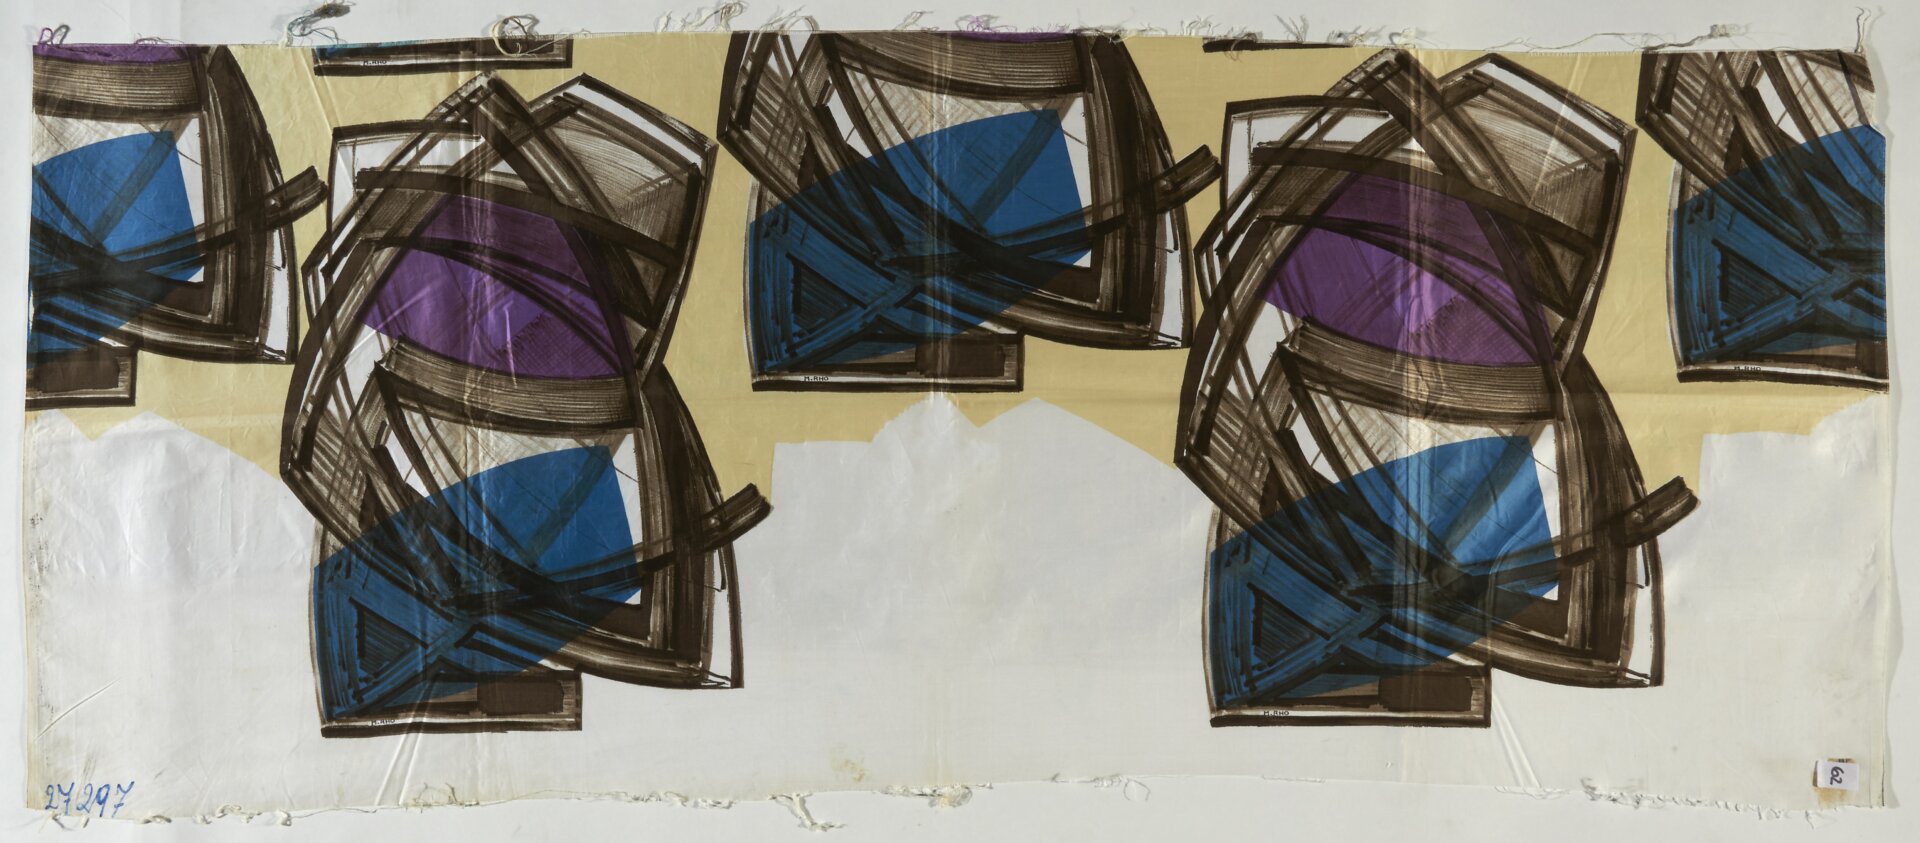 Tessuto per arredamento, 1955, Archivio Rho